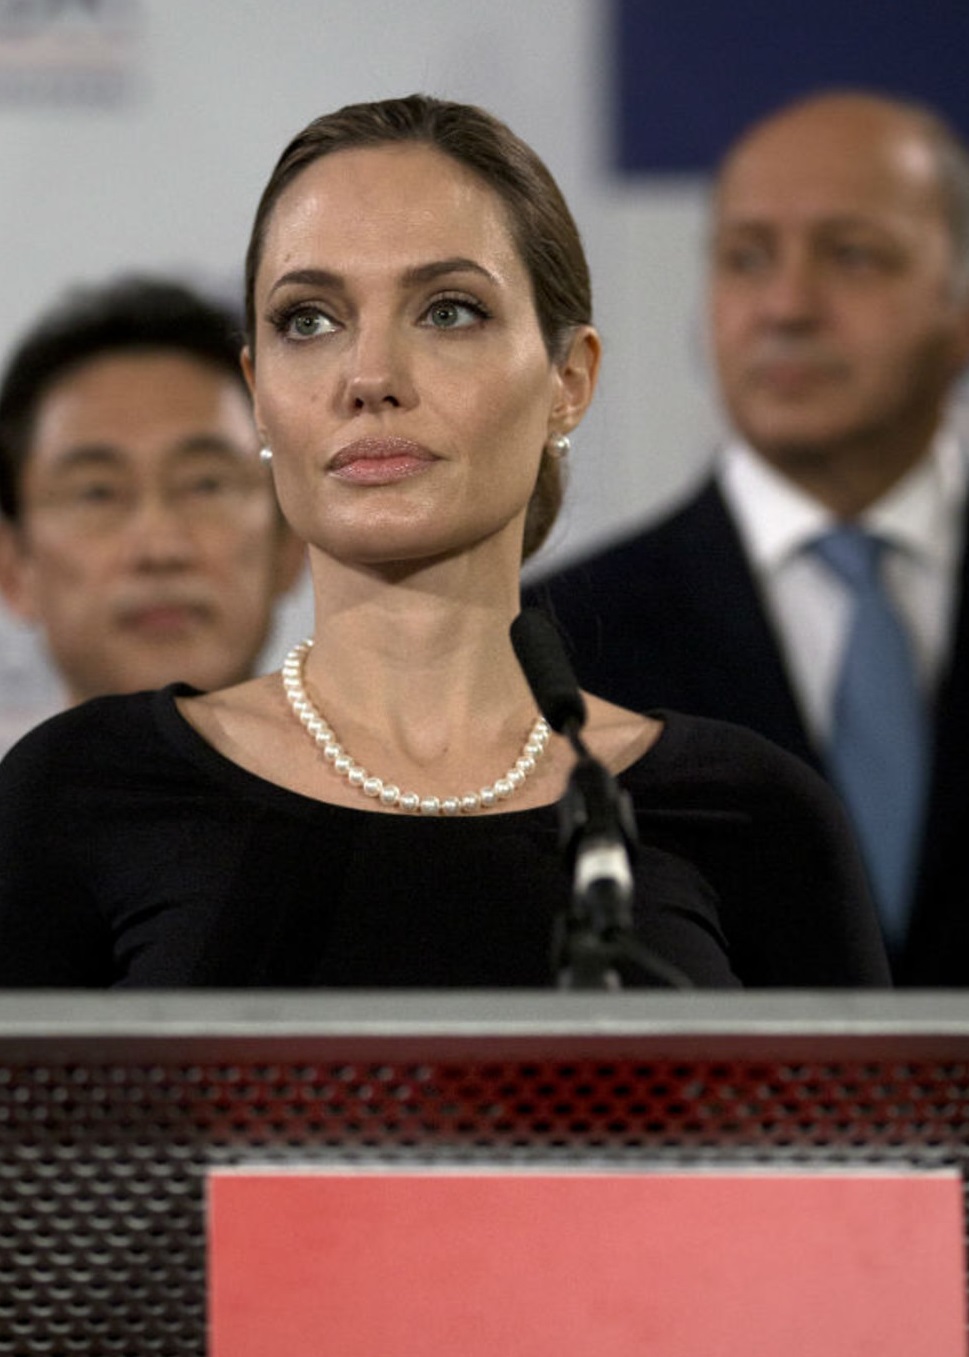 Andzhelina Dzholi delaet politicheskuyu kareru - Анджелина Джоли делает политическую карьеру